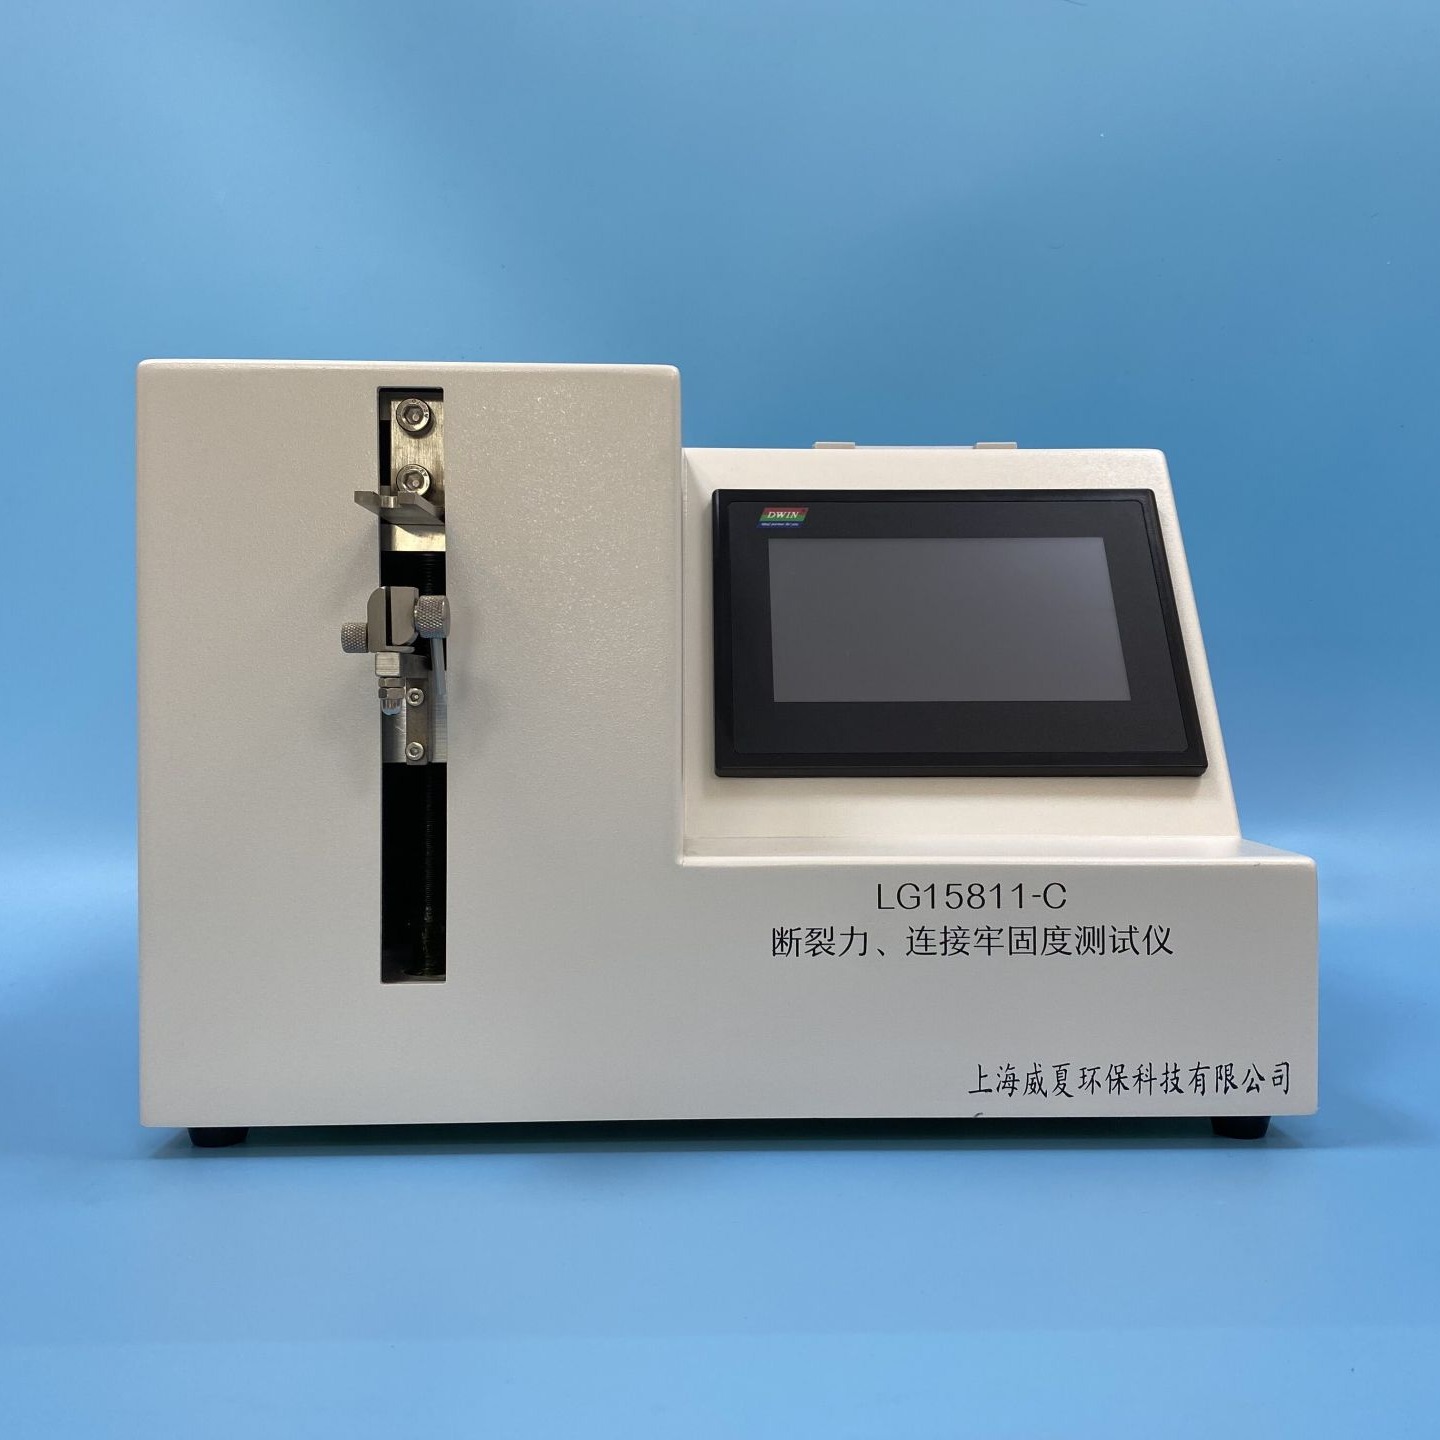 上海威夏牢固度检测仪LG15811-C医用针牢固度测试仪厂家